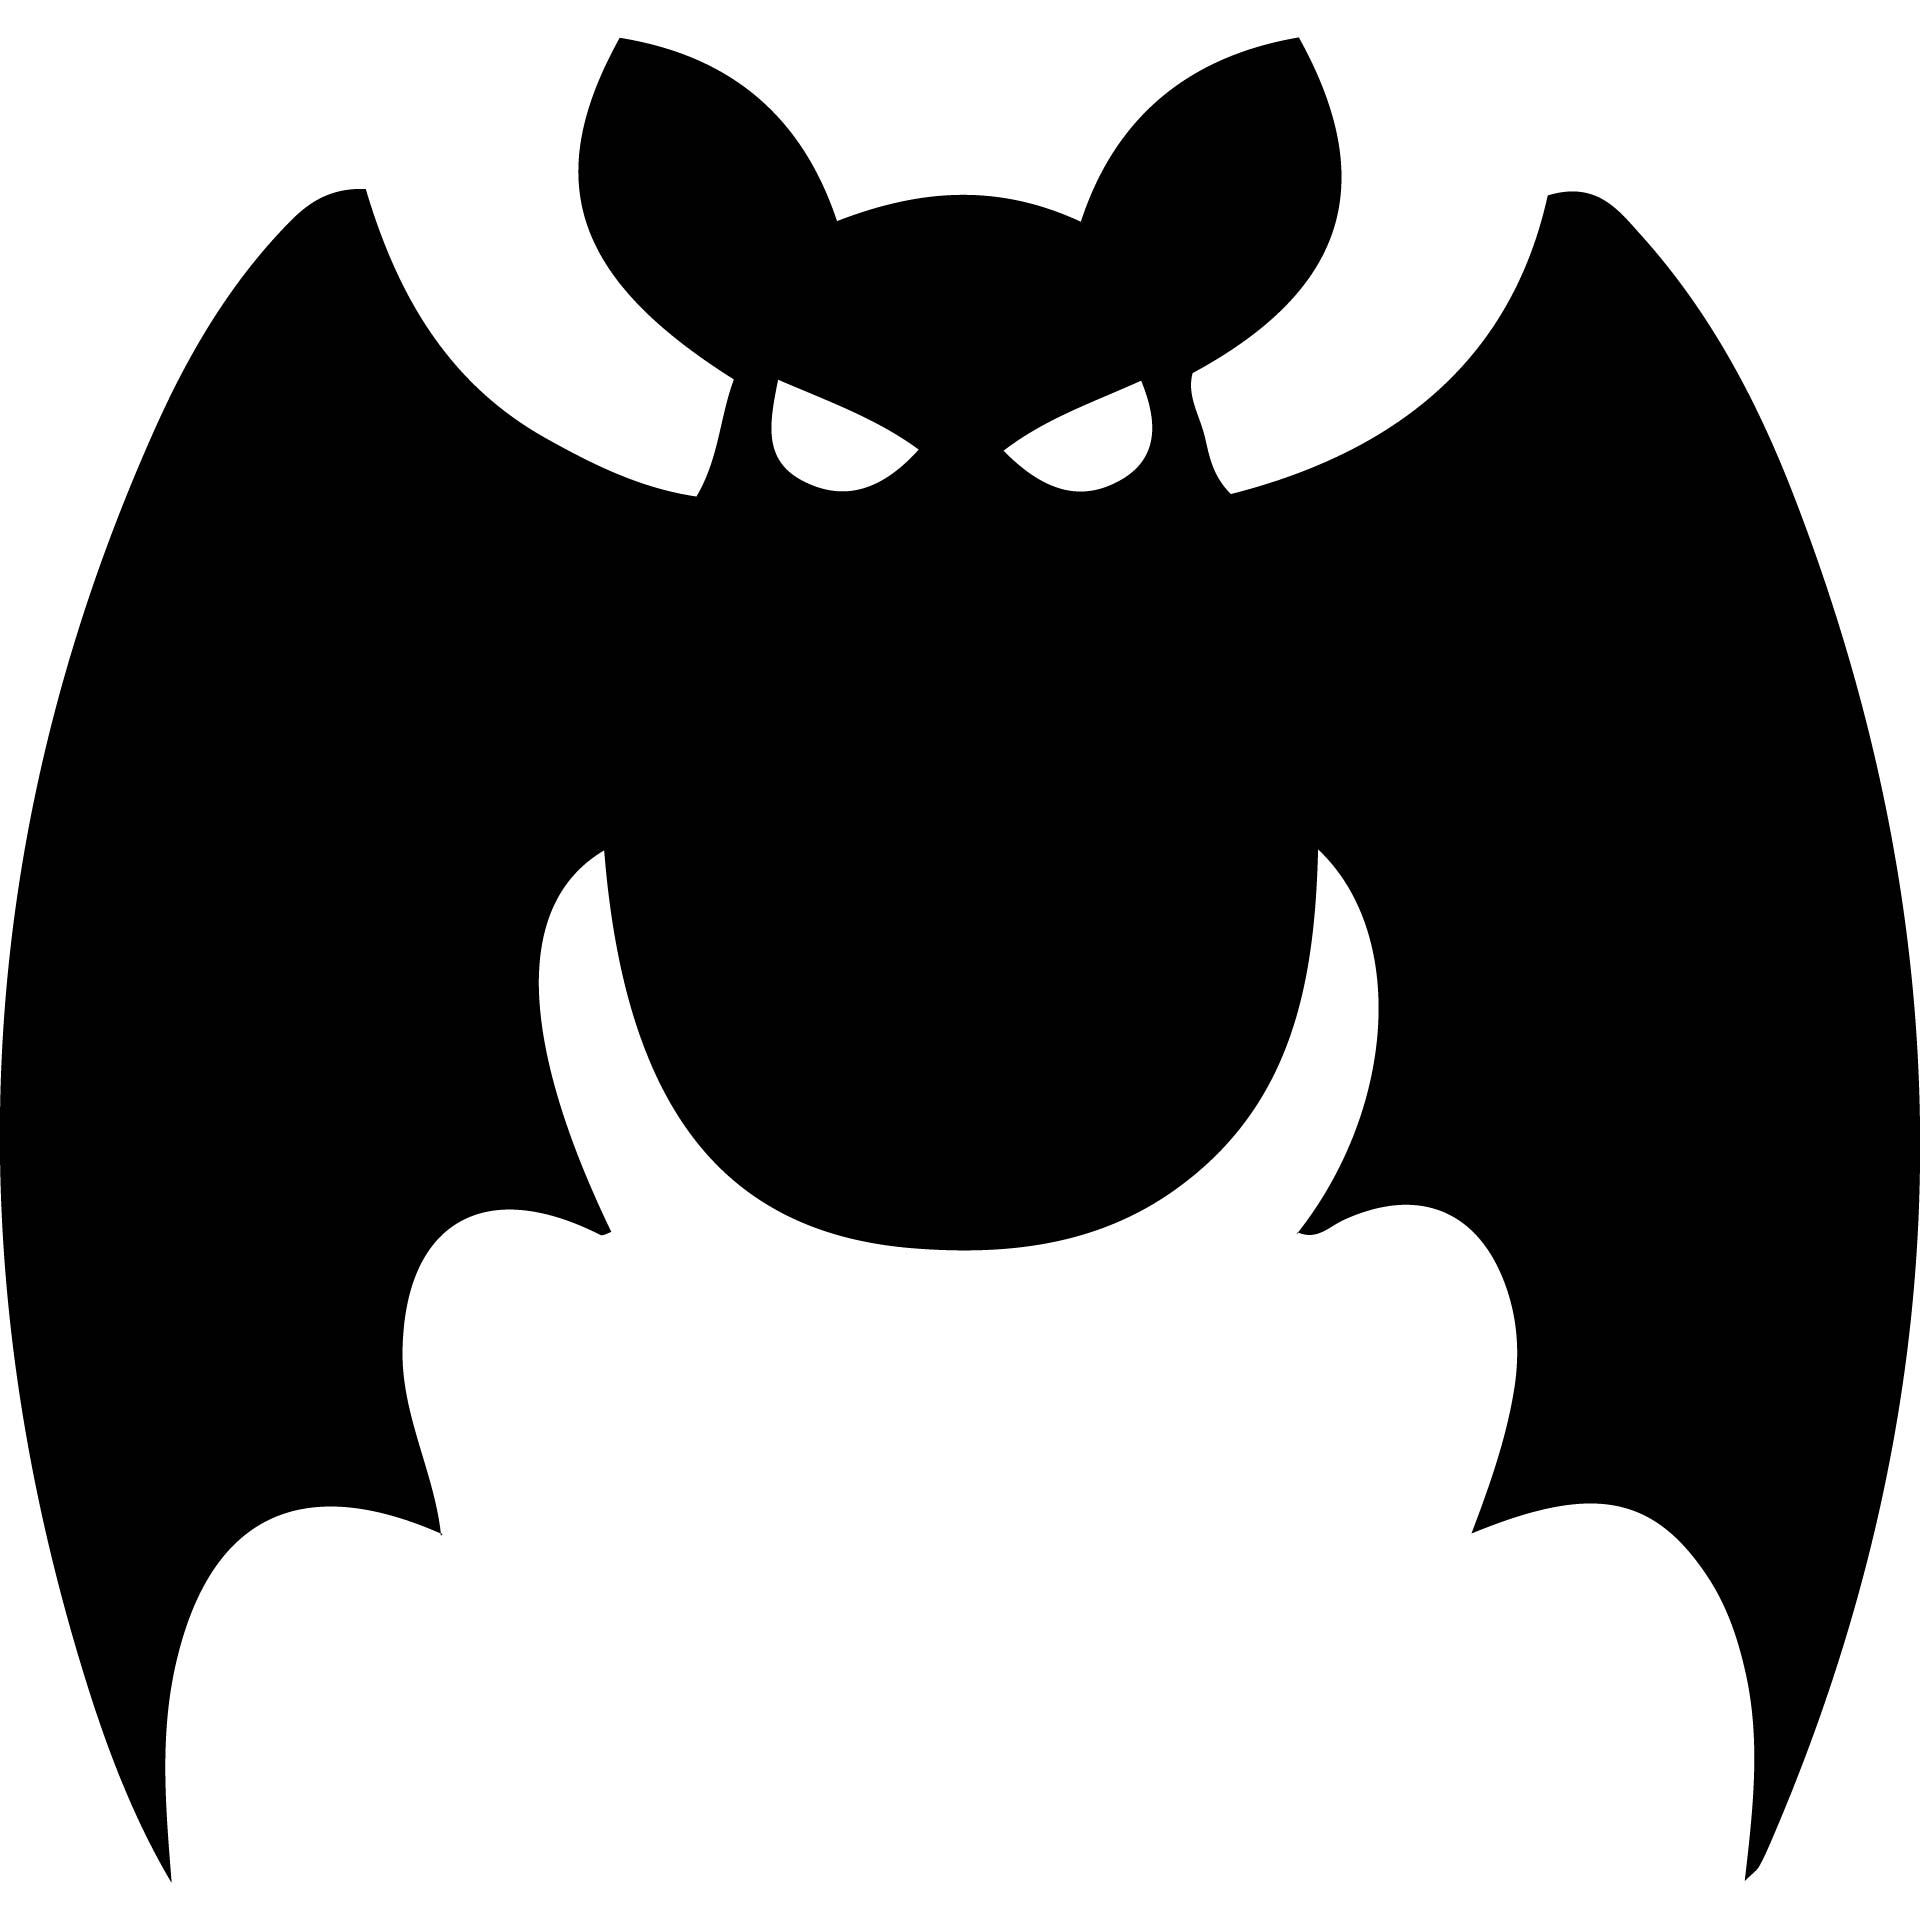 8 Best Bats For Bat Stencils Printable